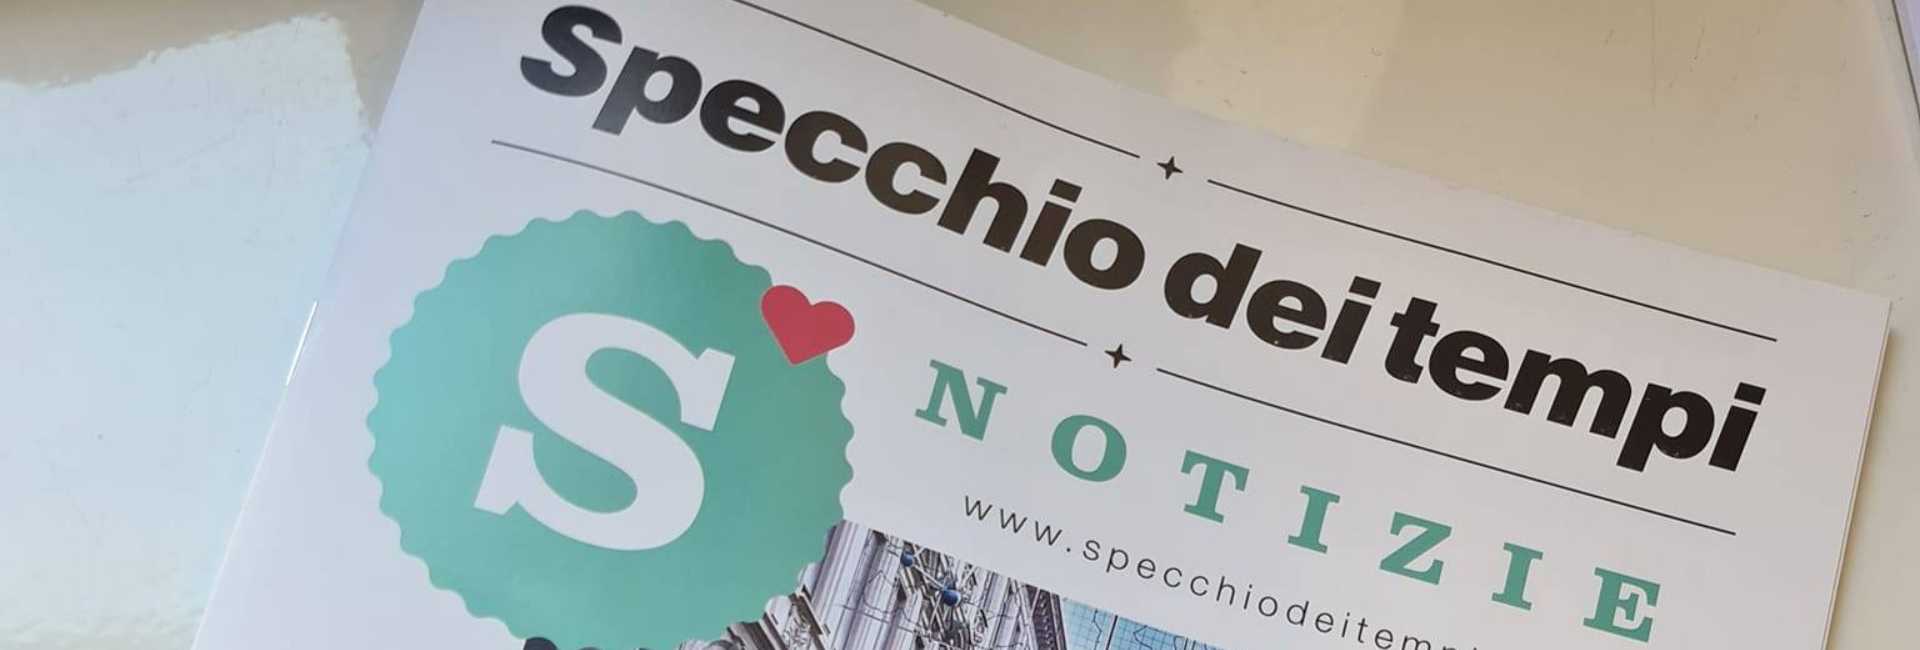 Specchio Magazine